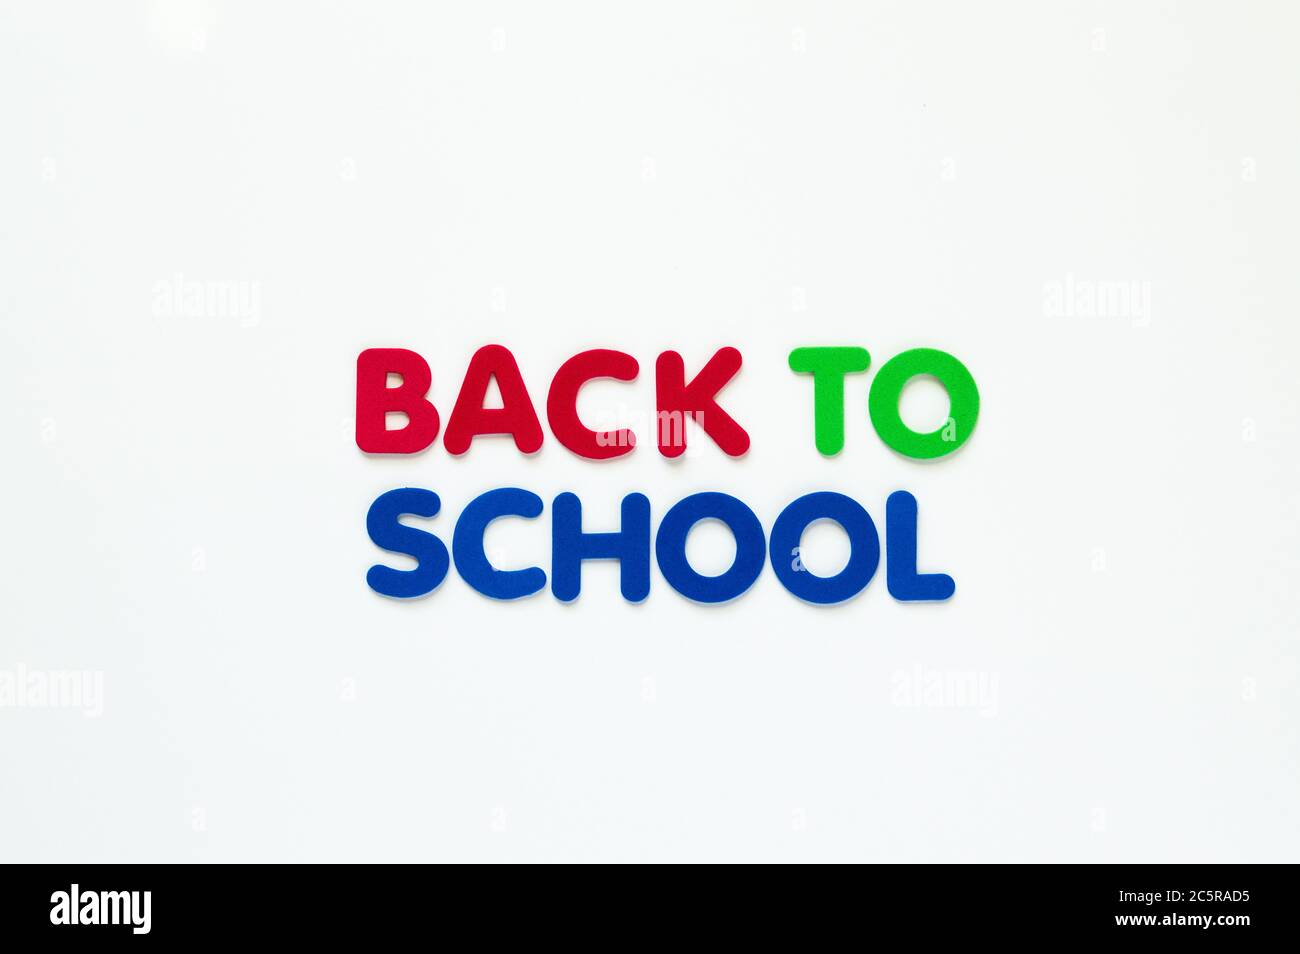 Lettere in schiuma rossa, verde e blu con la scritta "Back to School" in due righe isolate su bianco Foto Stock